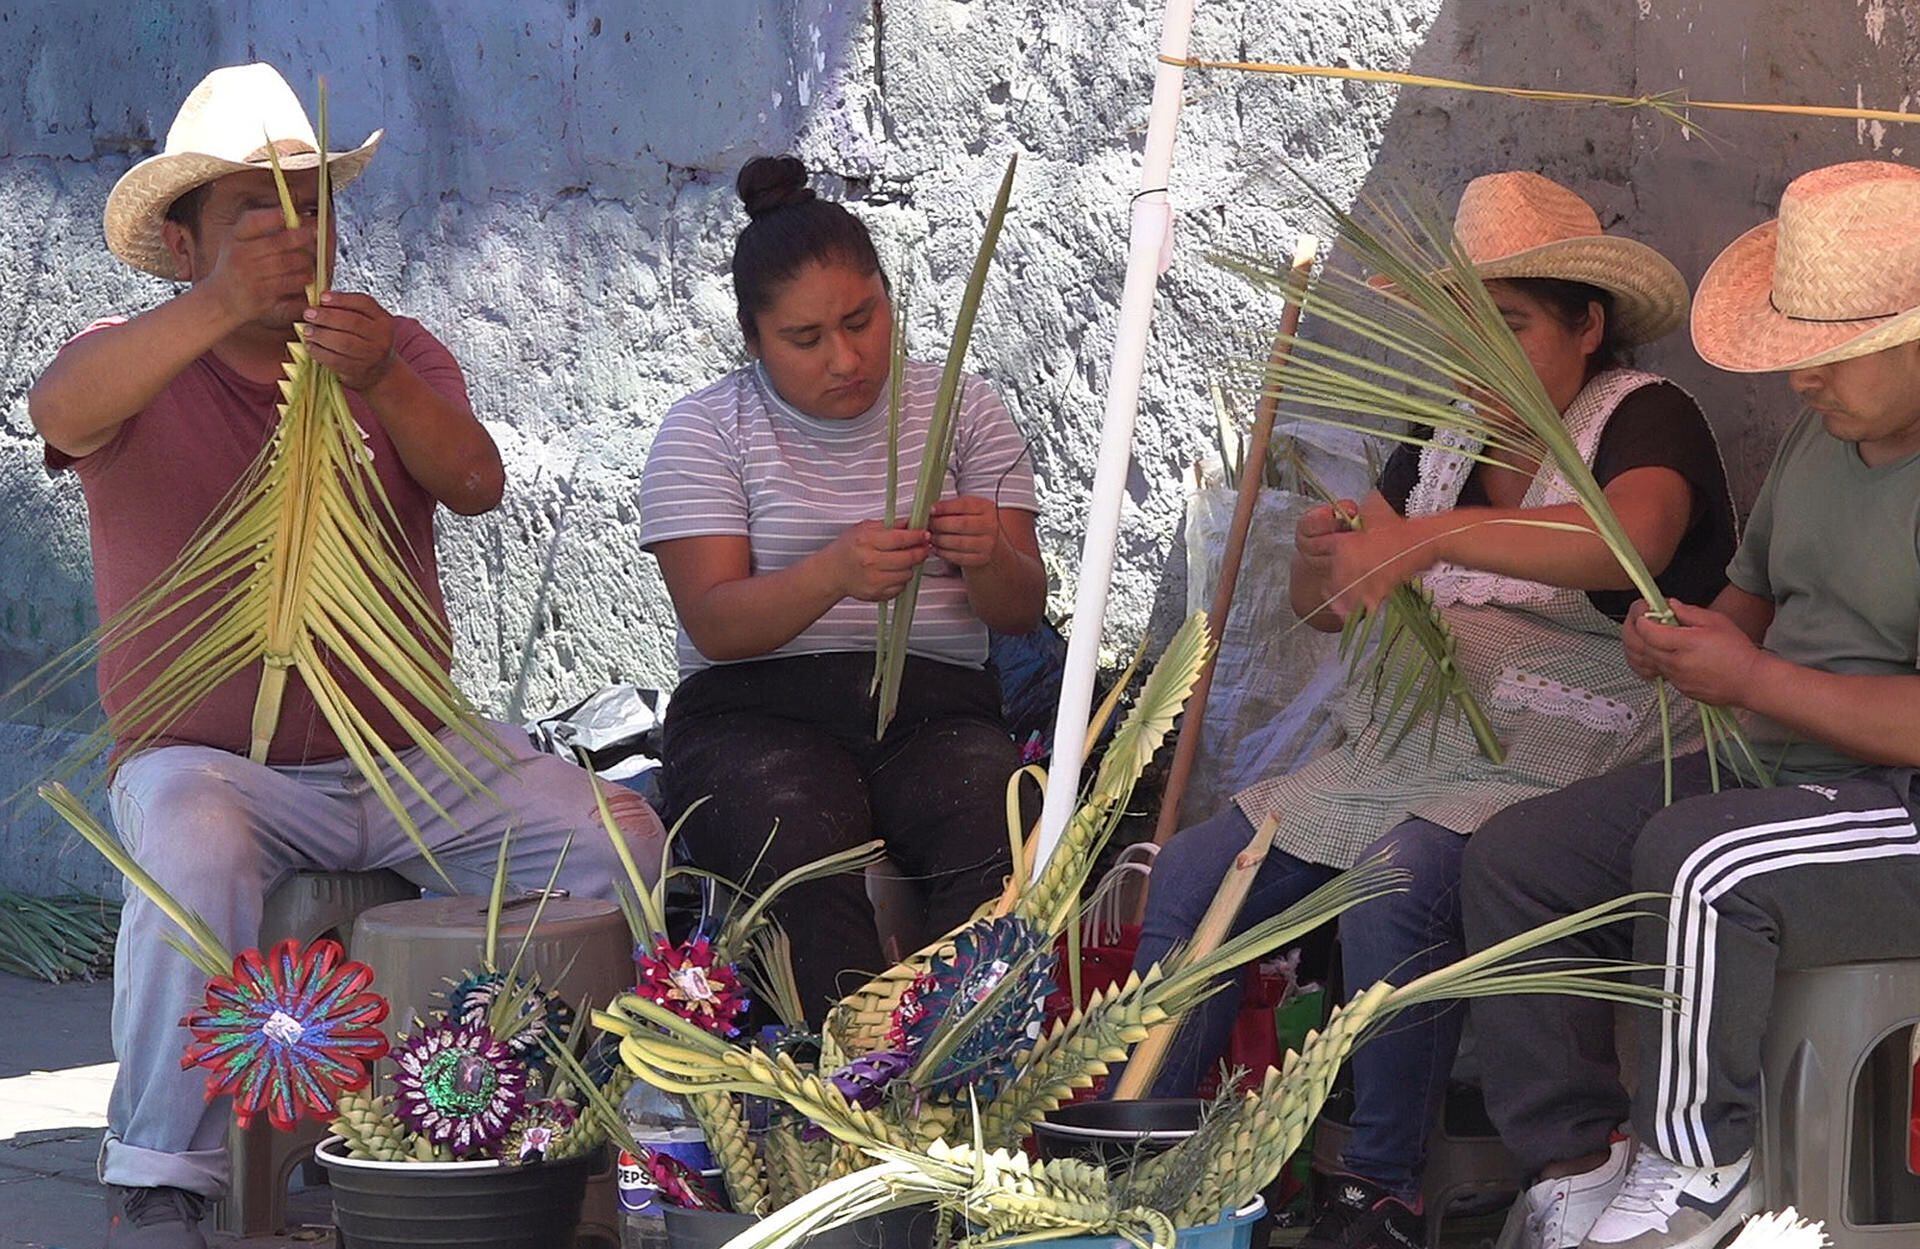 Artesanos elaboran cruces de palma y artículos religiosos para vender en las iglesias este Domingo de Ramos, en el estado de Oaxaca (México).  EFE/Jesús Méndez
